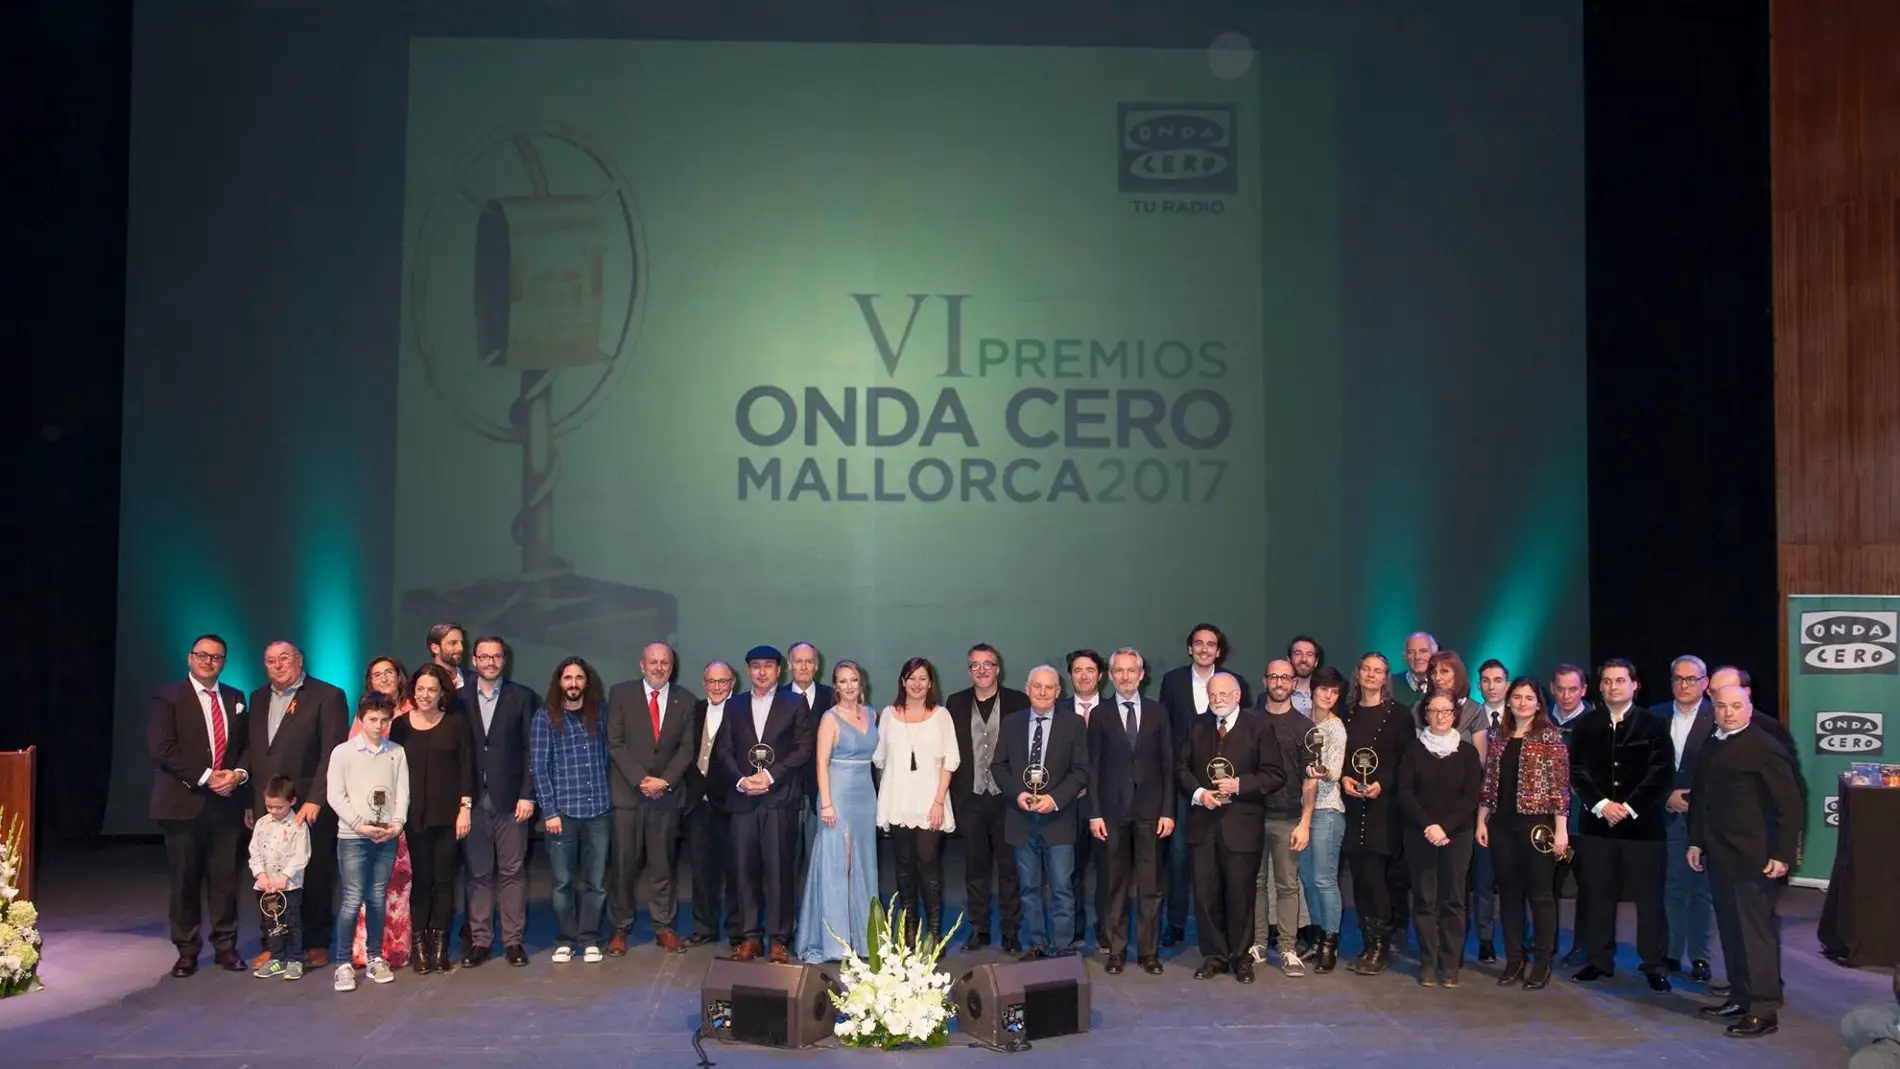 VI Premios Onda Cero Mallorca